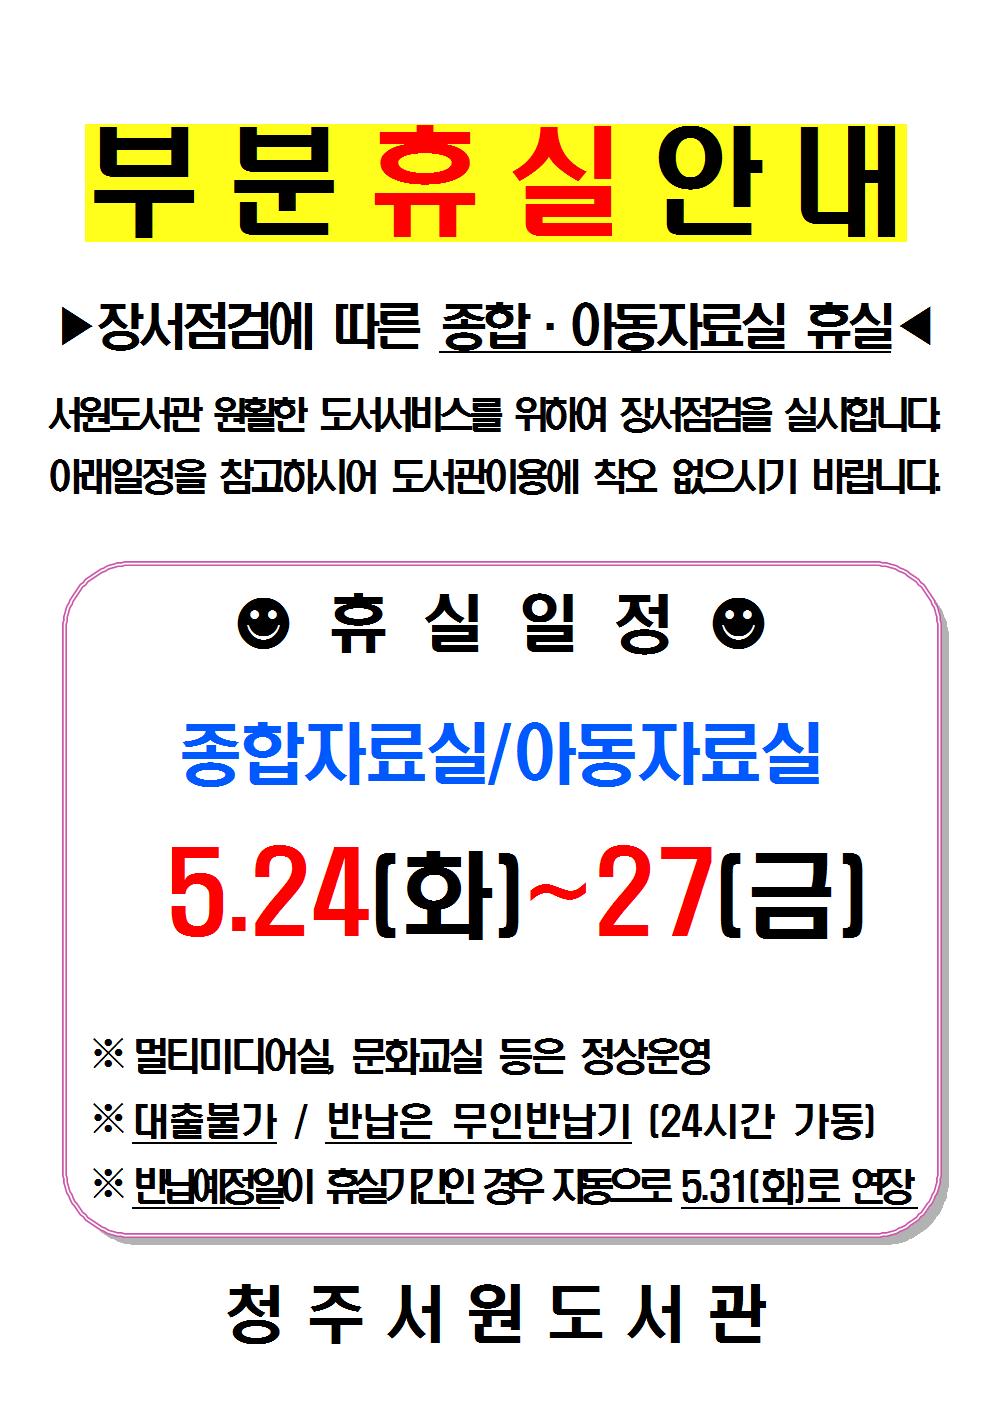 2016 서원도서관 정기 장서점검에 따른 부분휴실 안내(5.23 - 5.27)